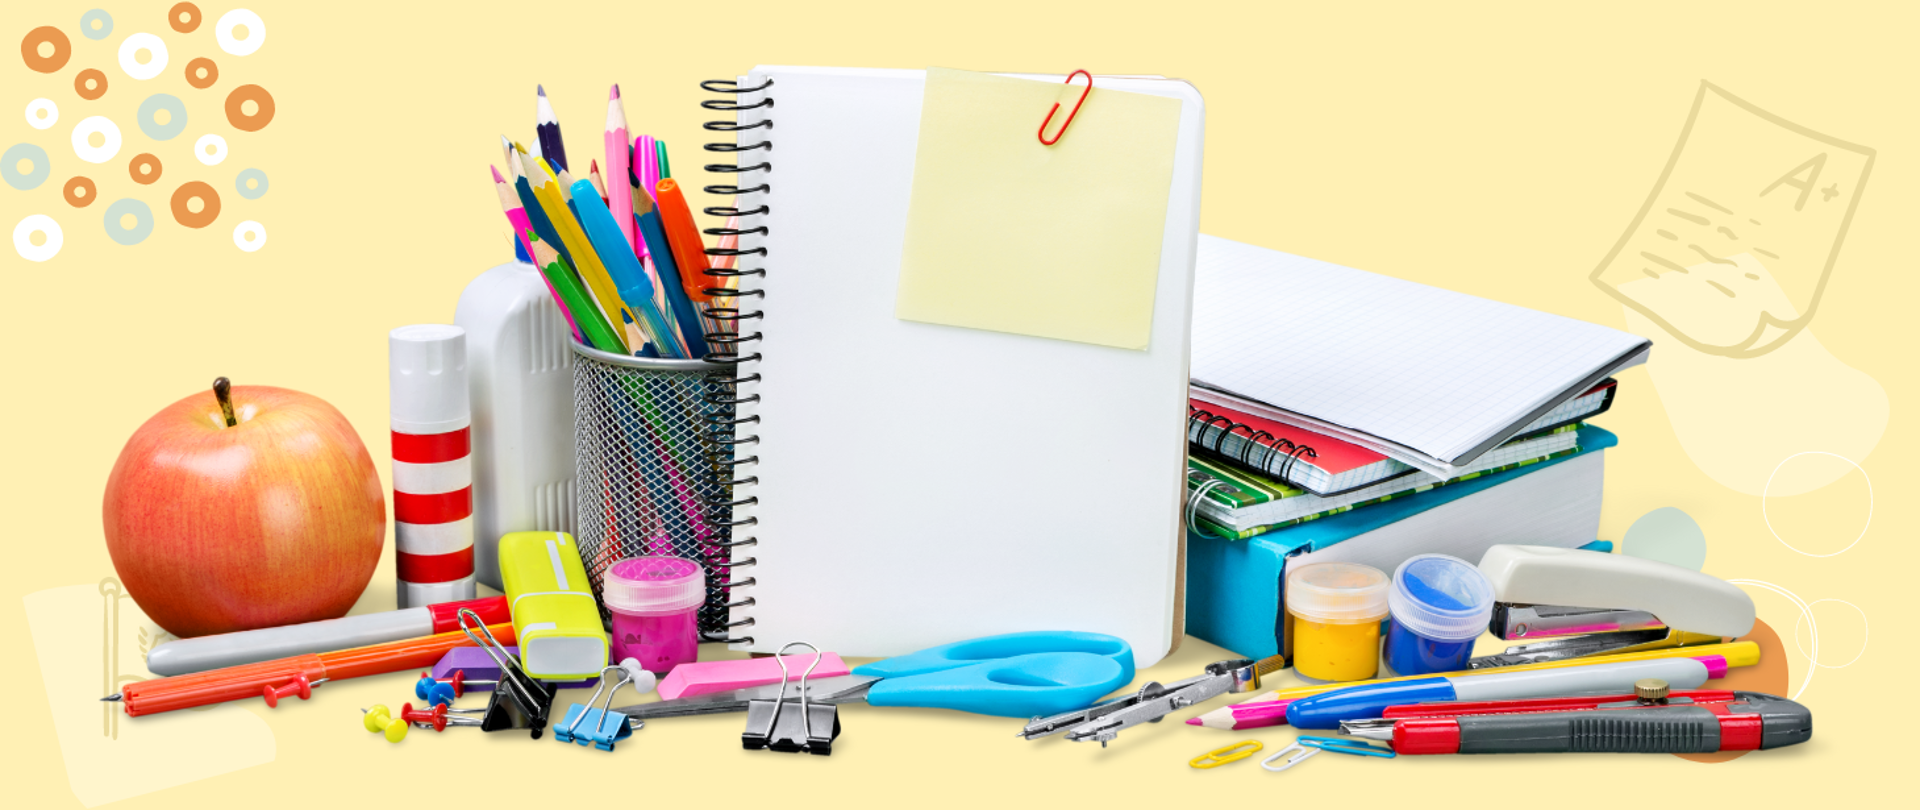 Zdjęcie przedstawiające przybory szkolne, kredki, zeszyty, farby, klej, jabłko